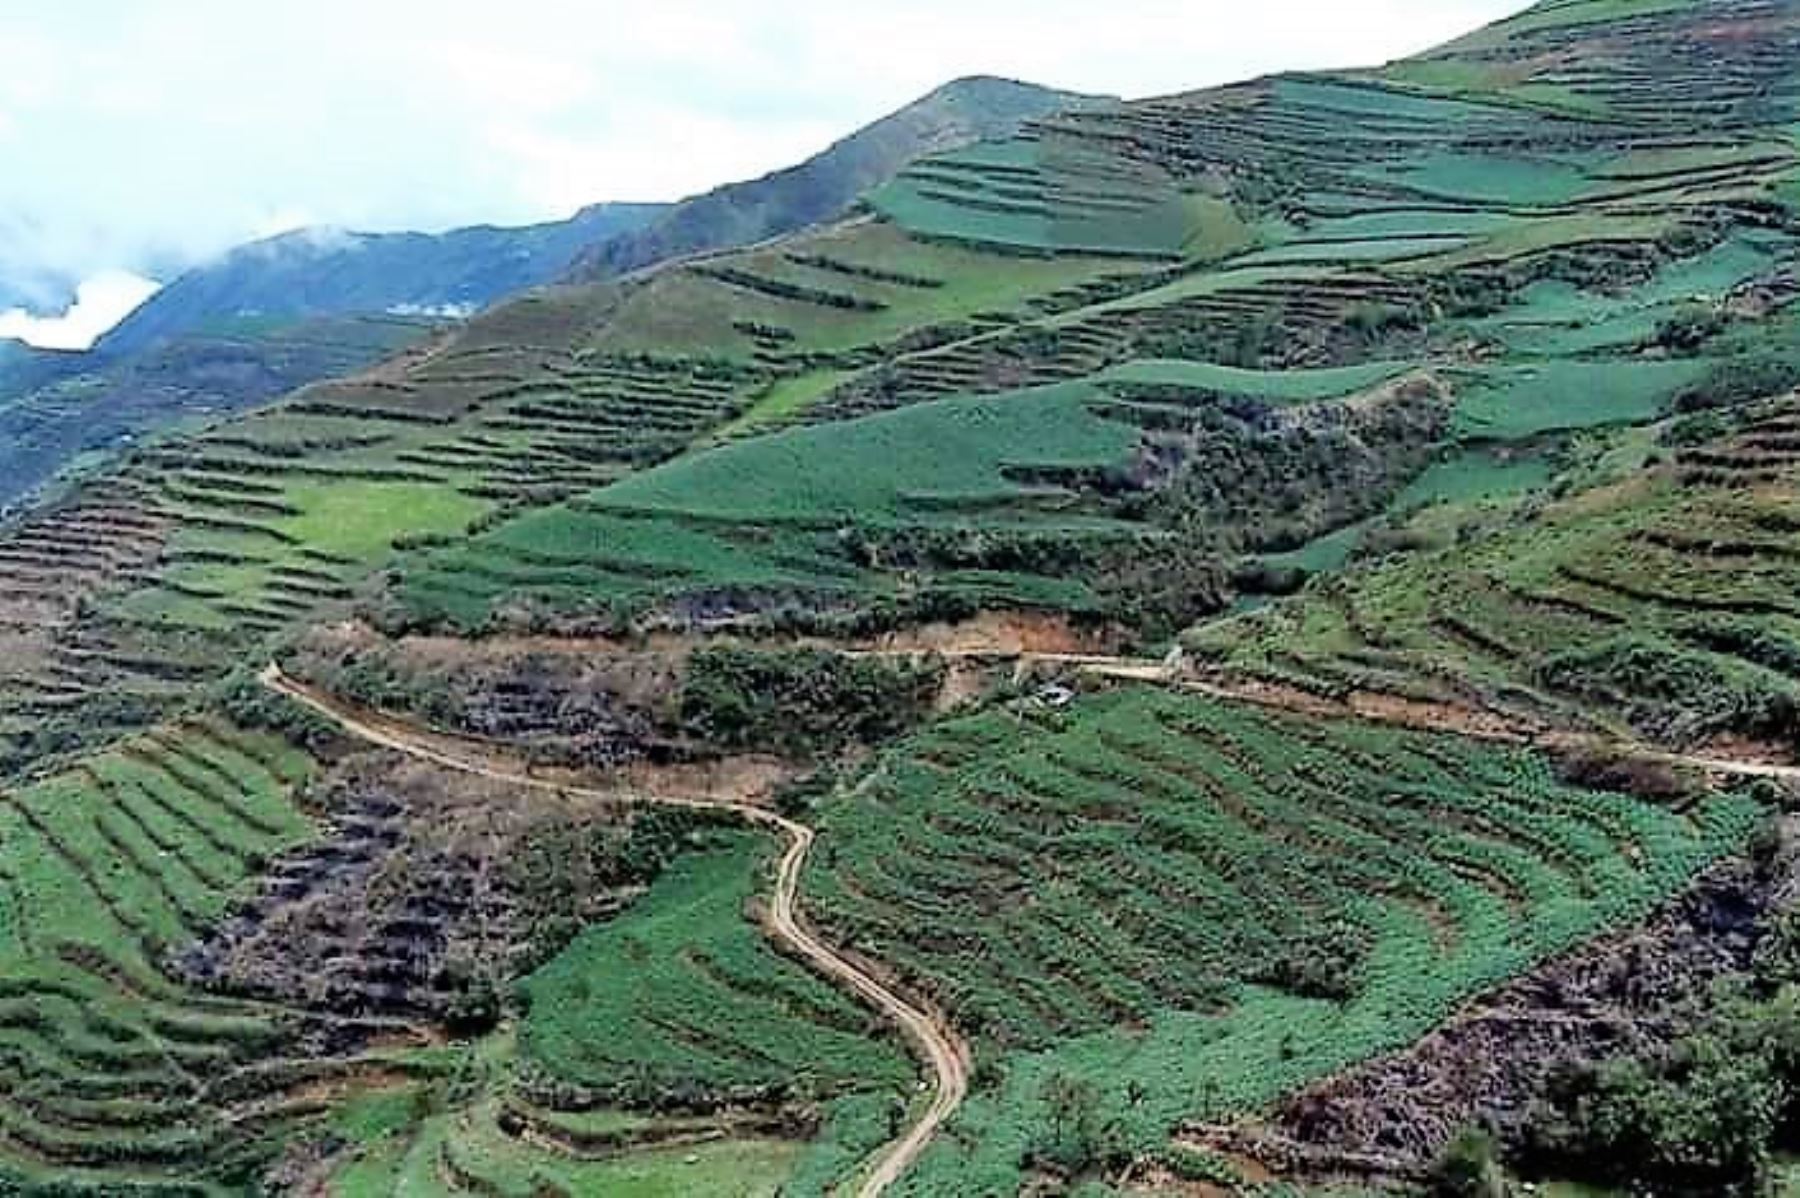 Zona agrícola en el distrito de Huasahuasi, provincia de Tarma.